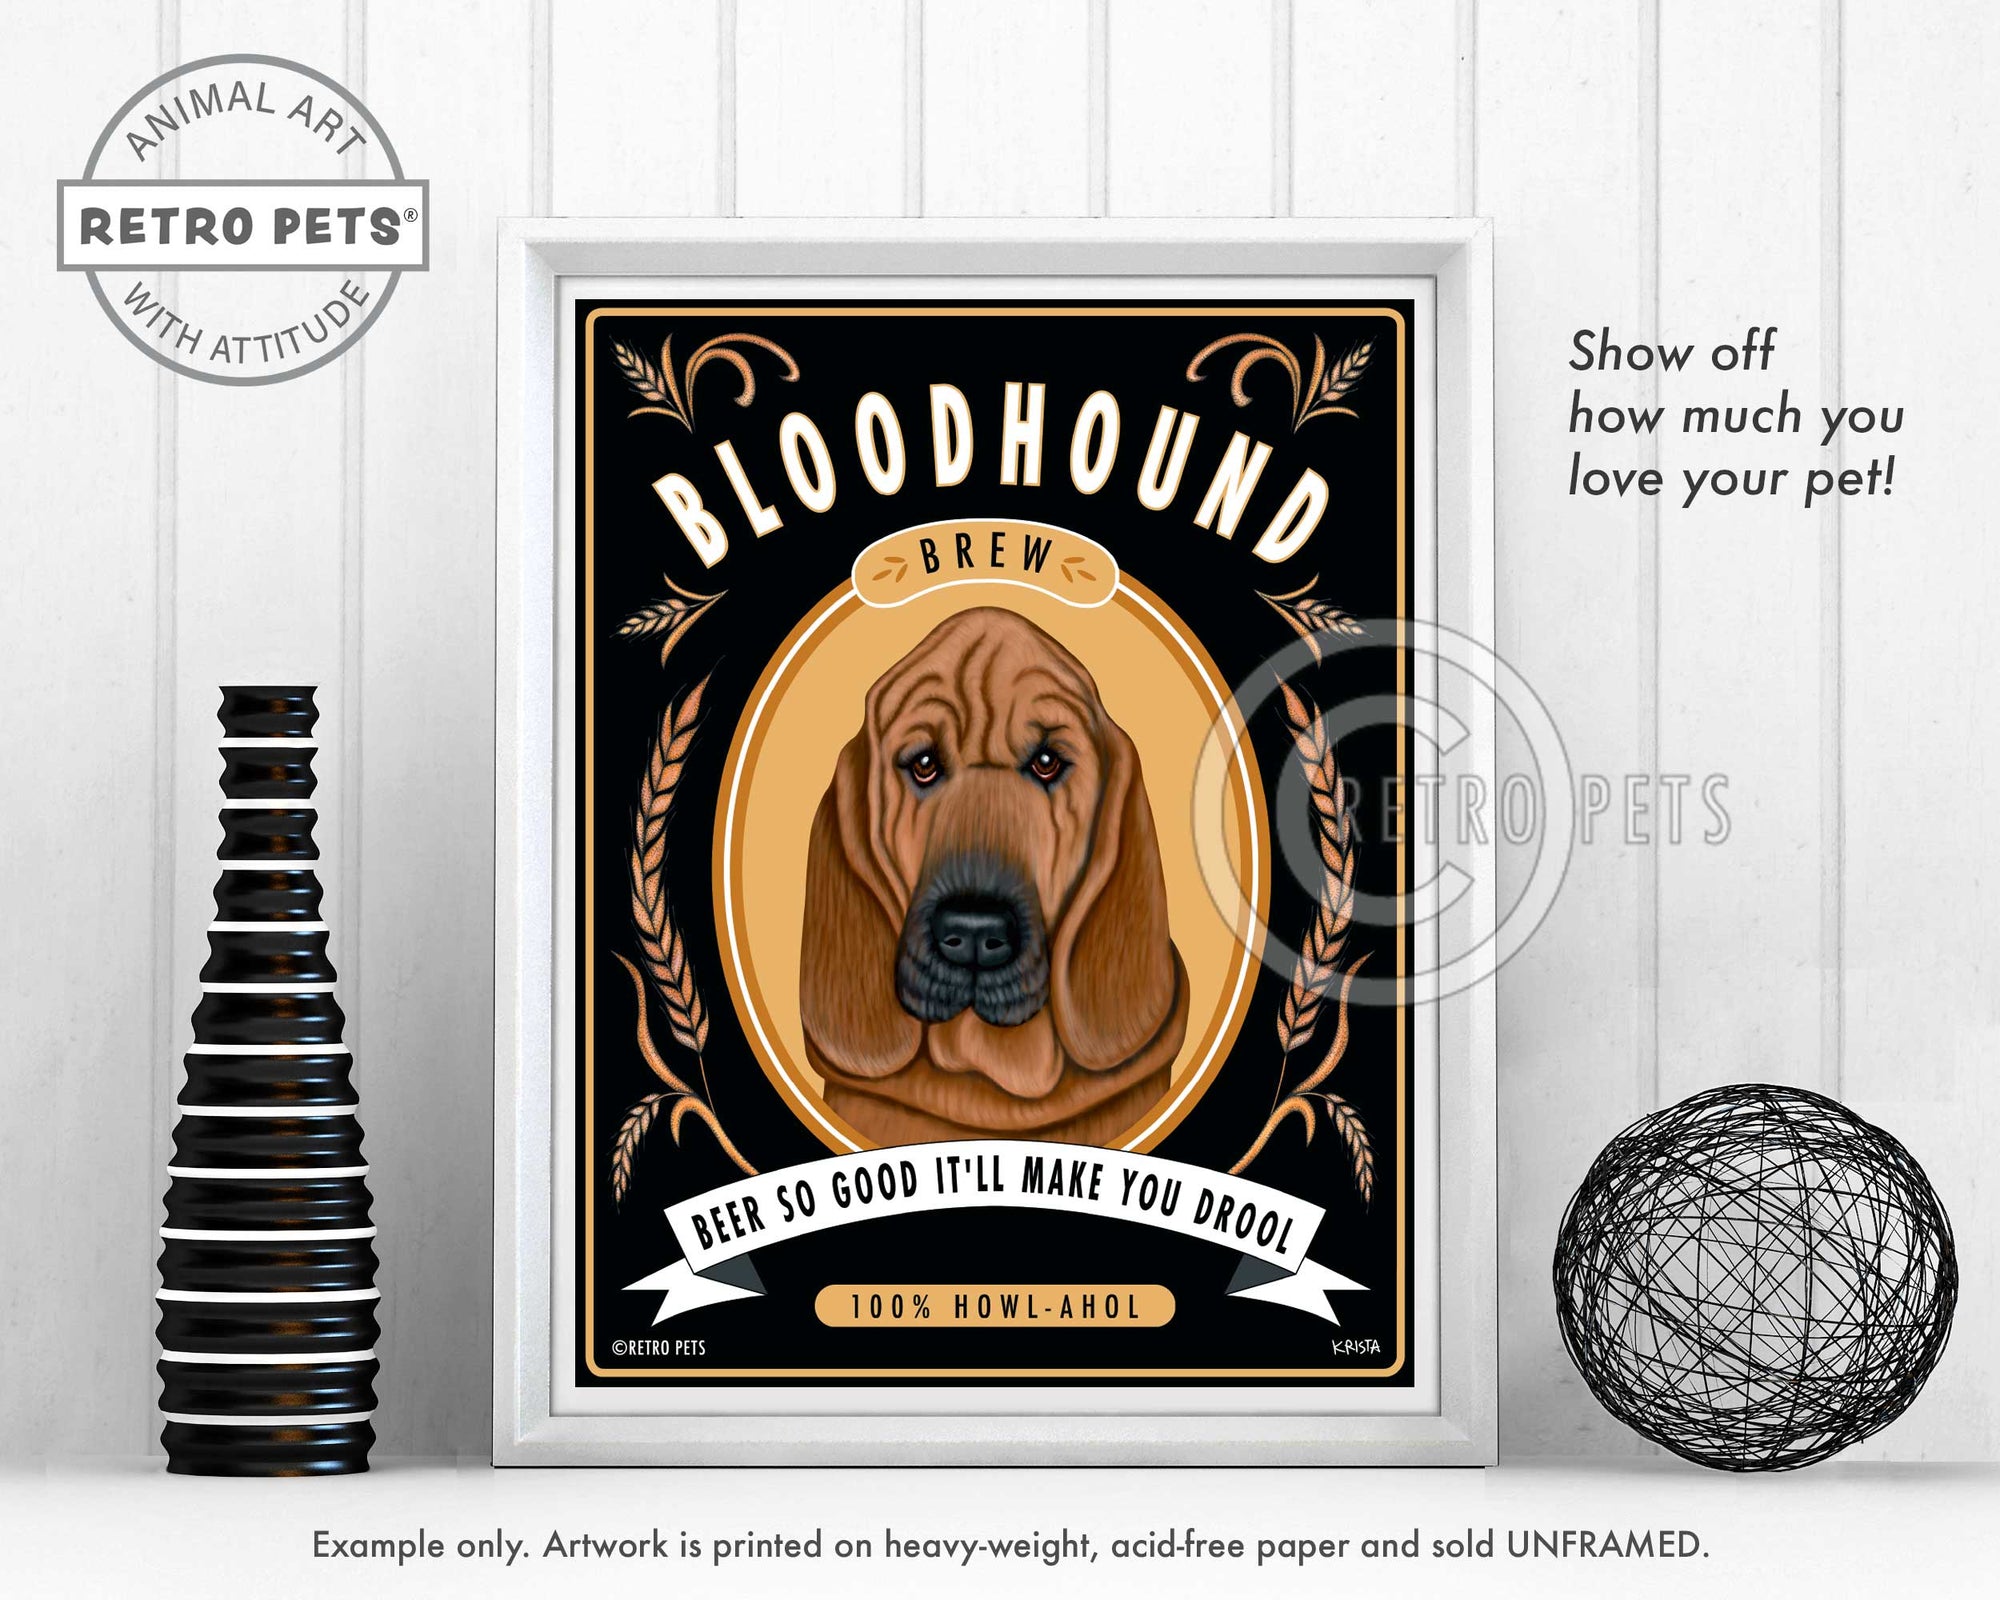 Bloodhound Art "Bloodhound Brew" Art Print by Krista Brooks